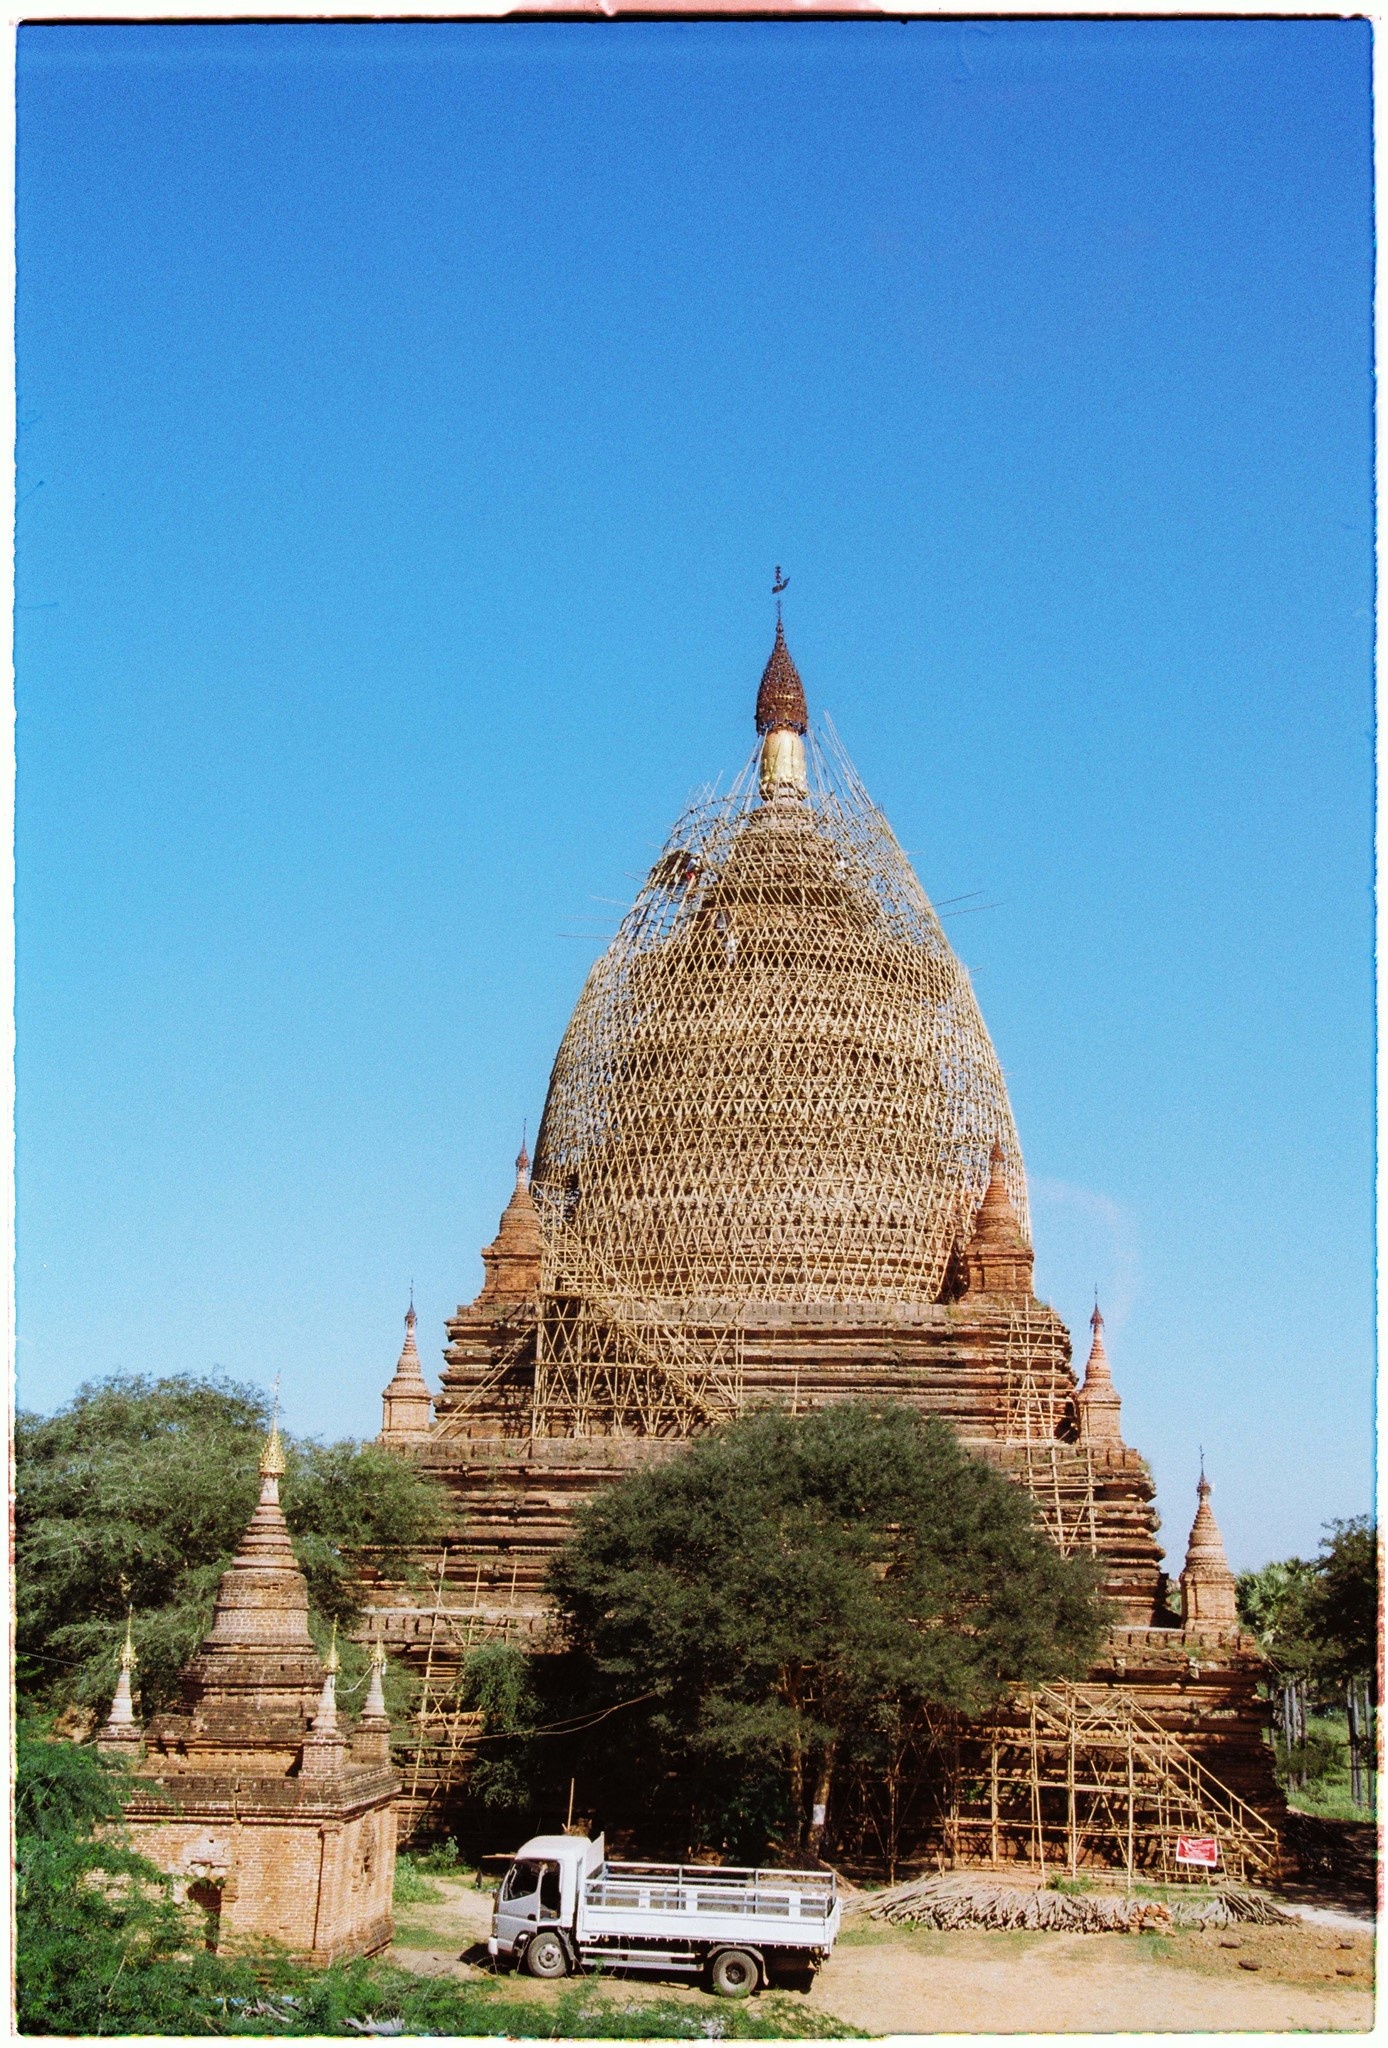 Kinh nghiem du lich Bagan anh 11